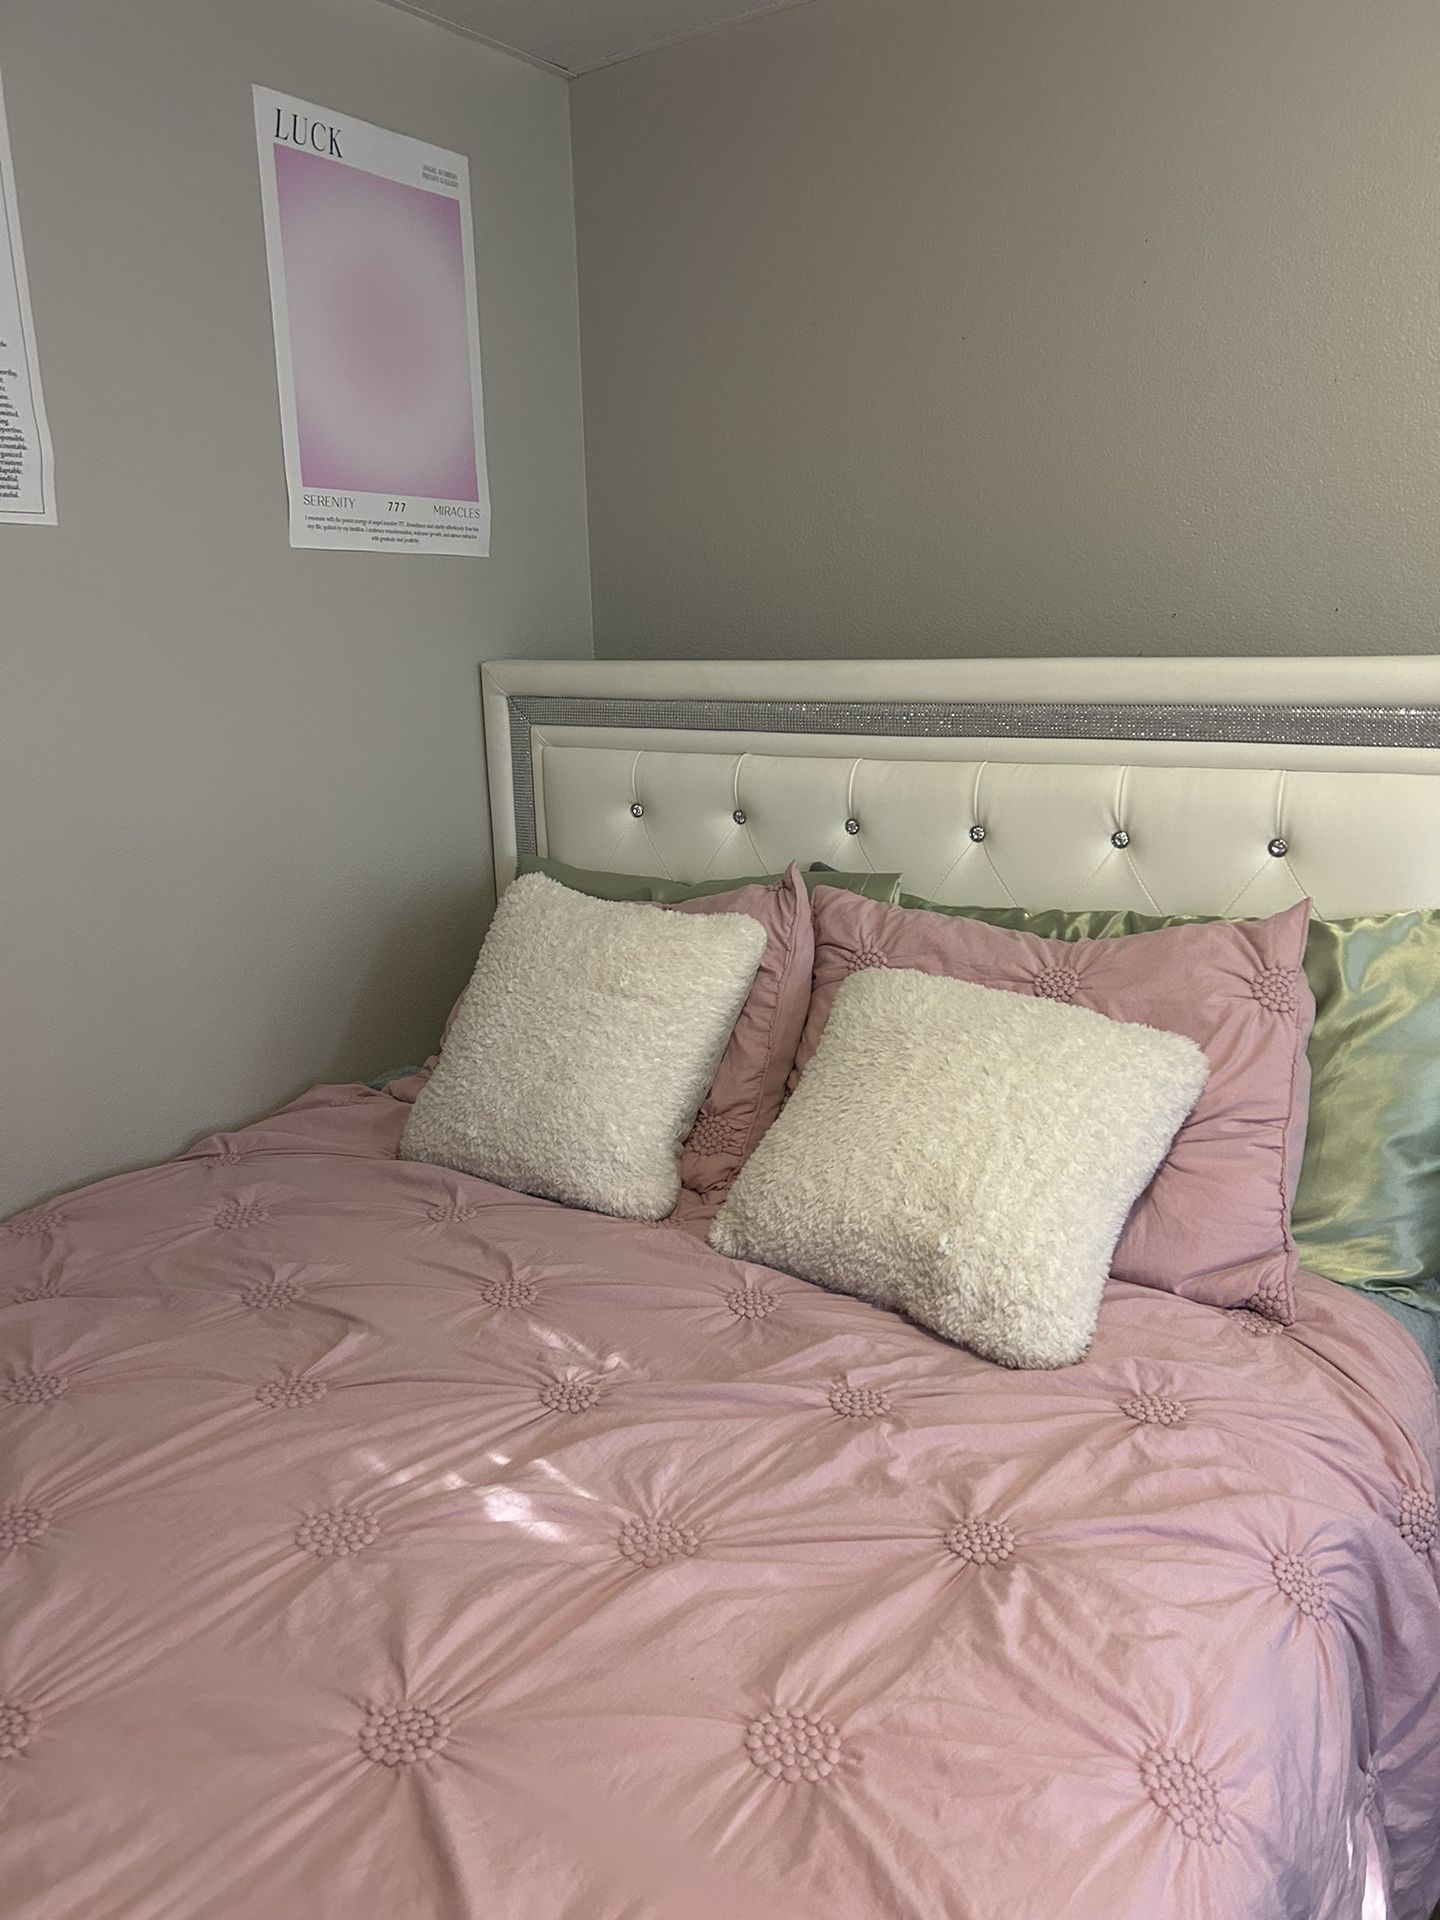 Queen bed frame 